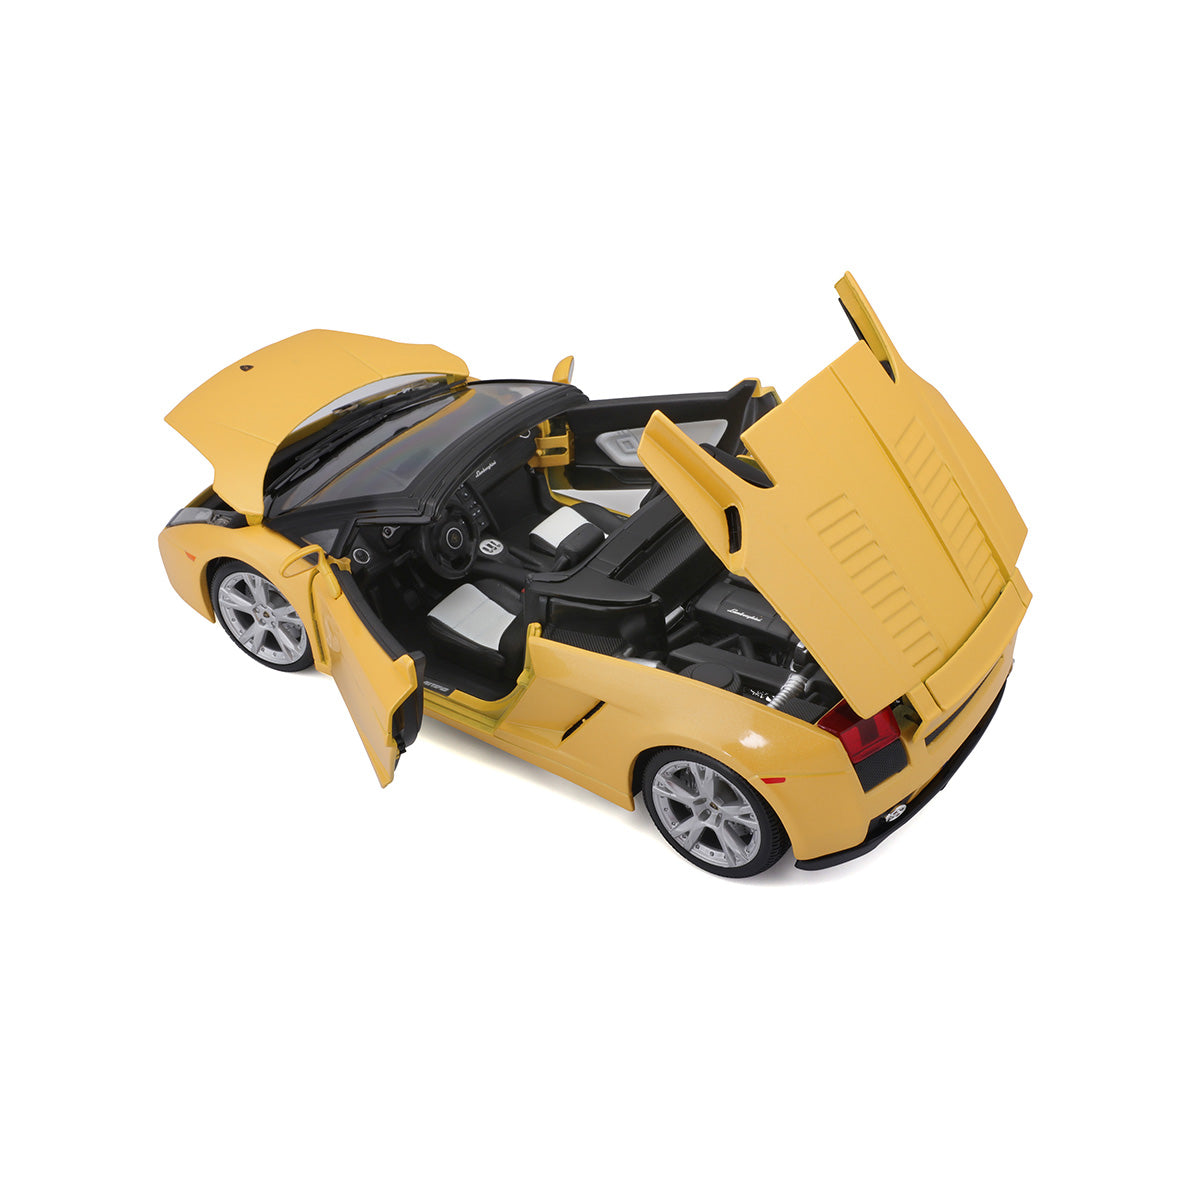 18-12016 - Bburago - 1:18 - Lamborghini Gallardo Spyder - Gialla Metallizzata